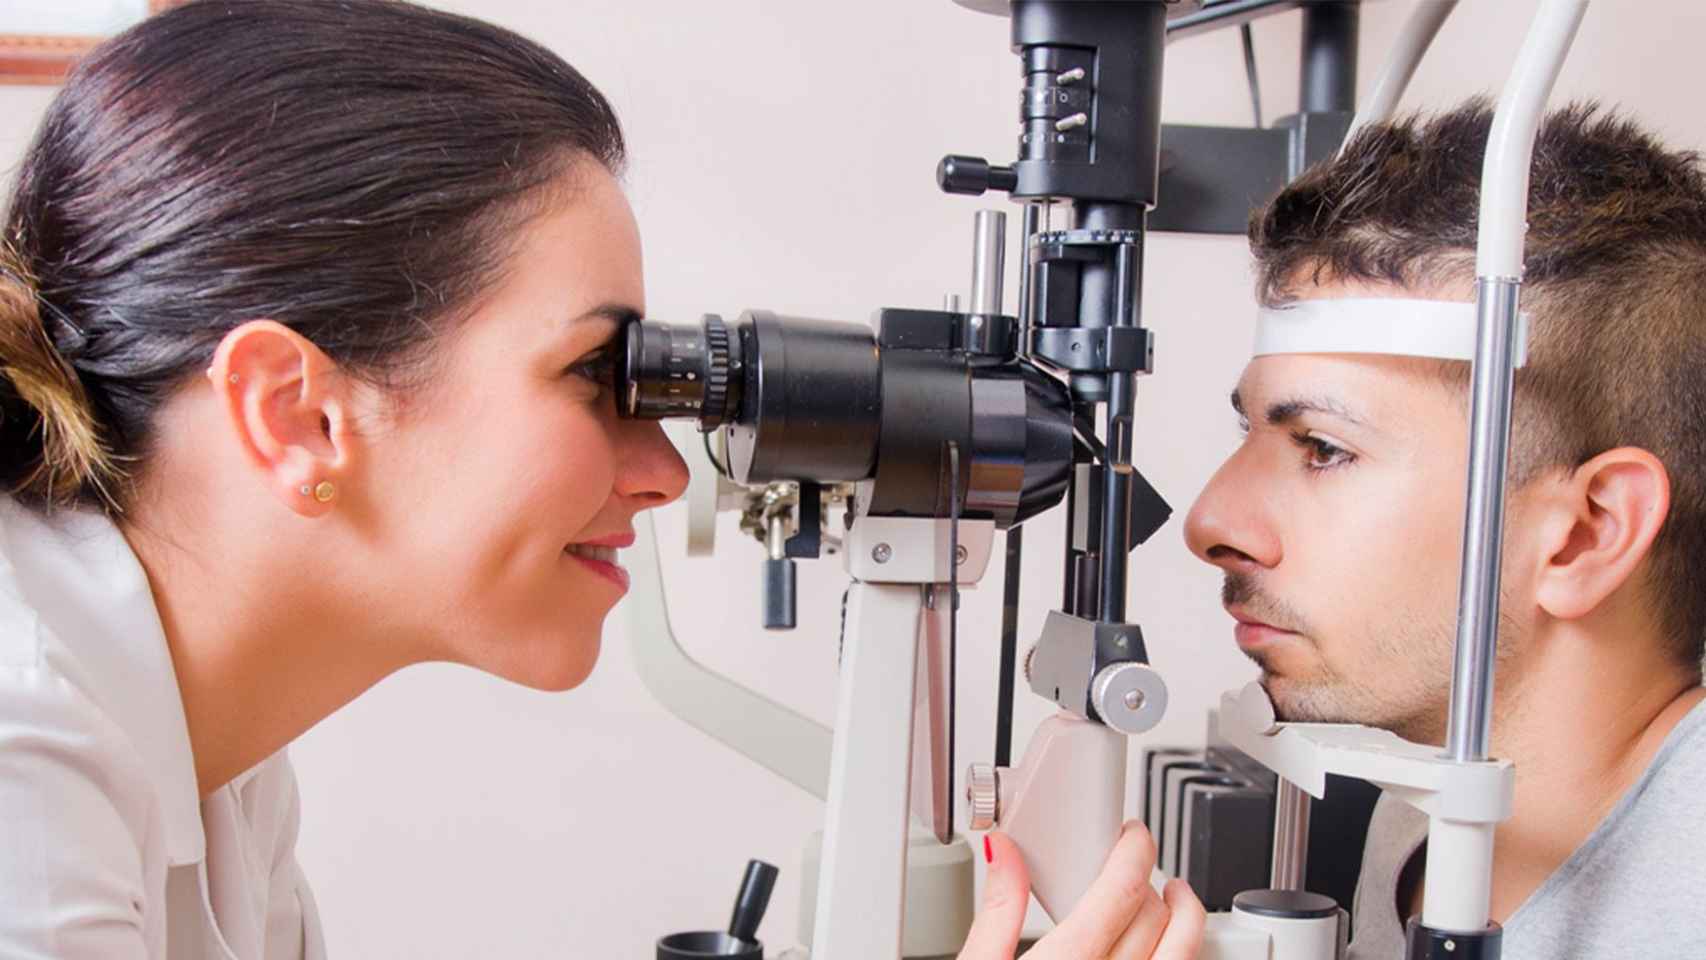 Un joven se somete a una revisión oftalmológica: el queratocono se manifiesta antes de la madurez